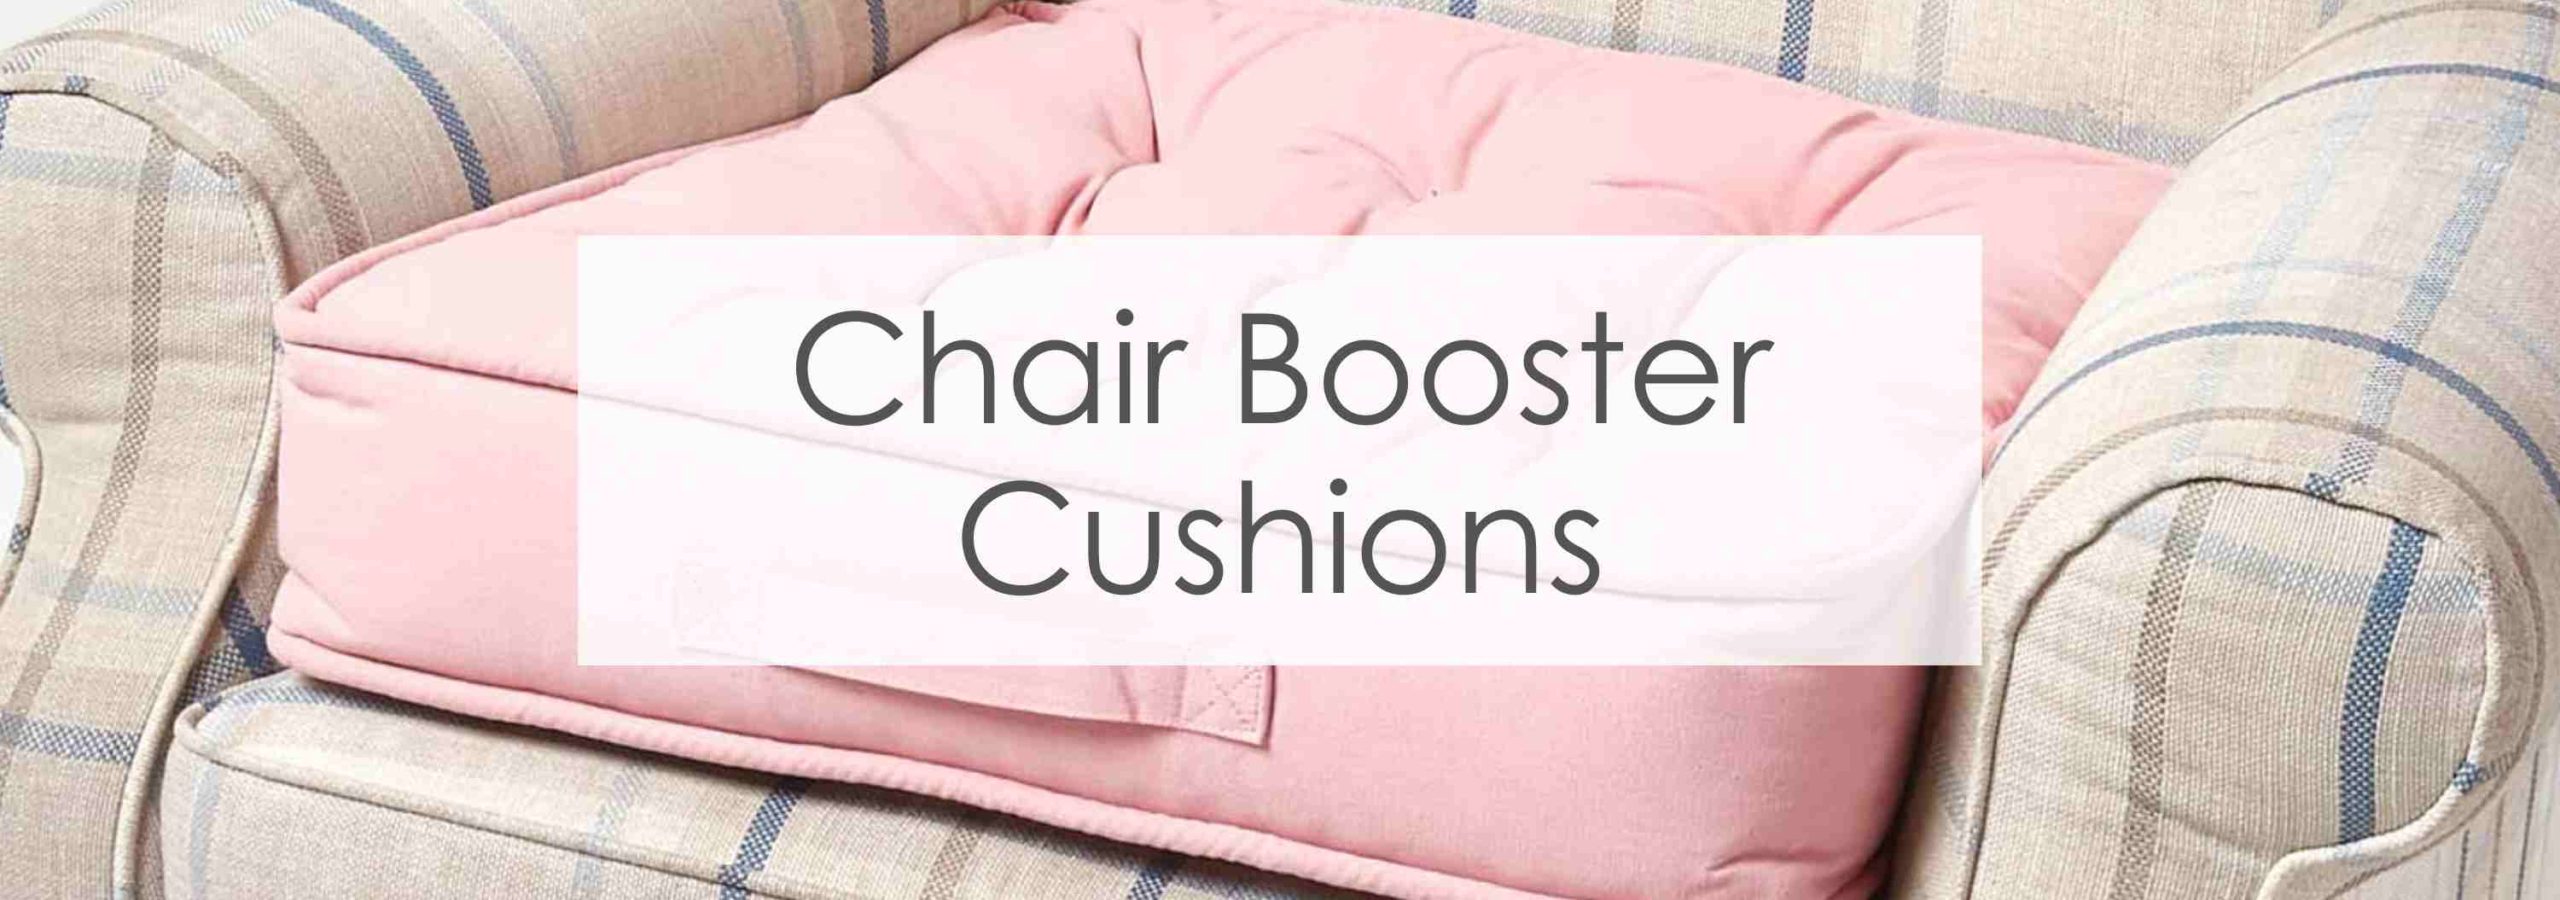 Chair booster cushions